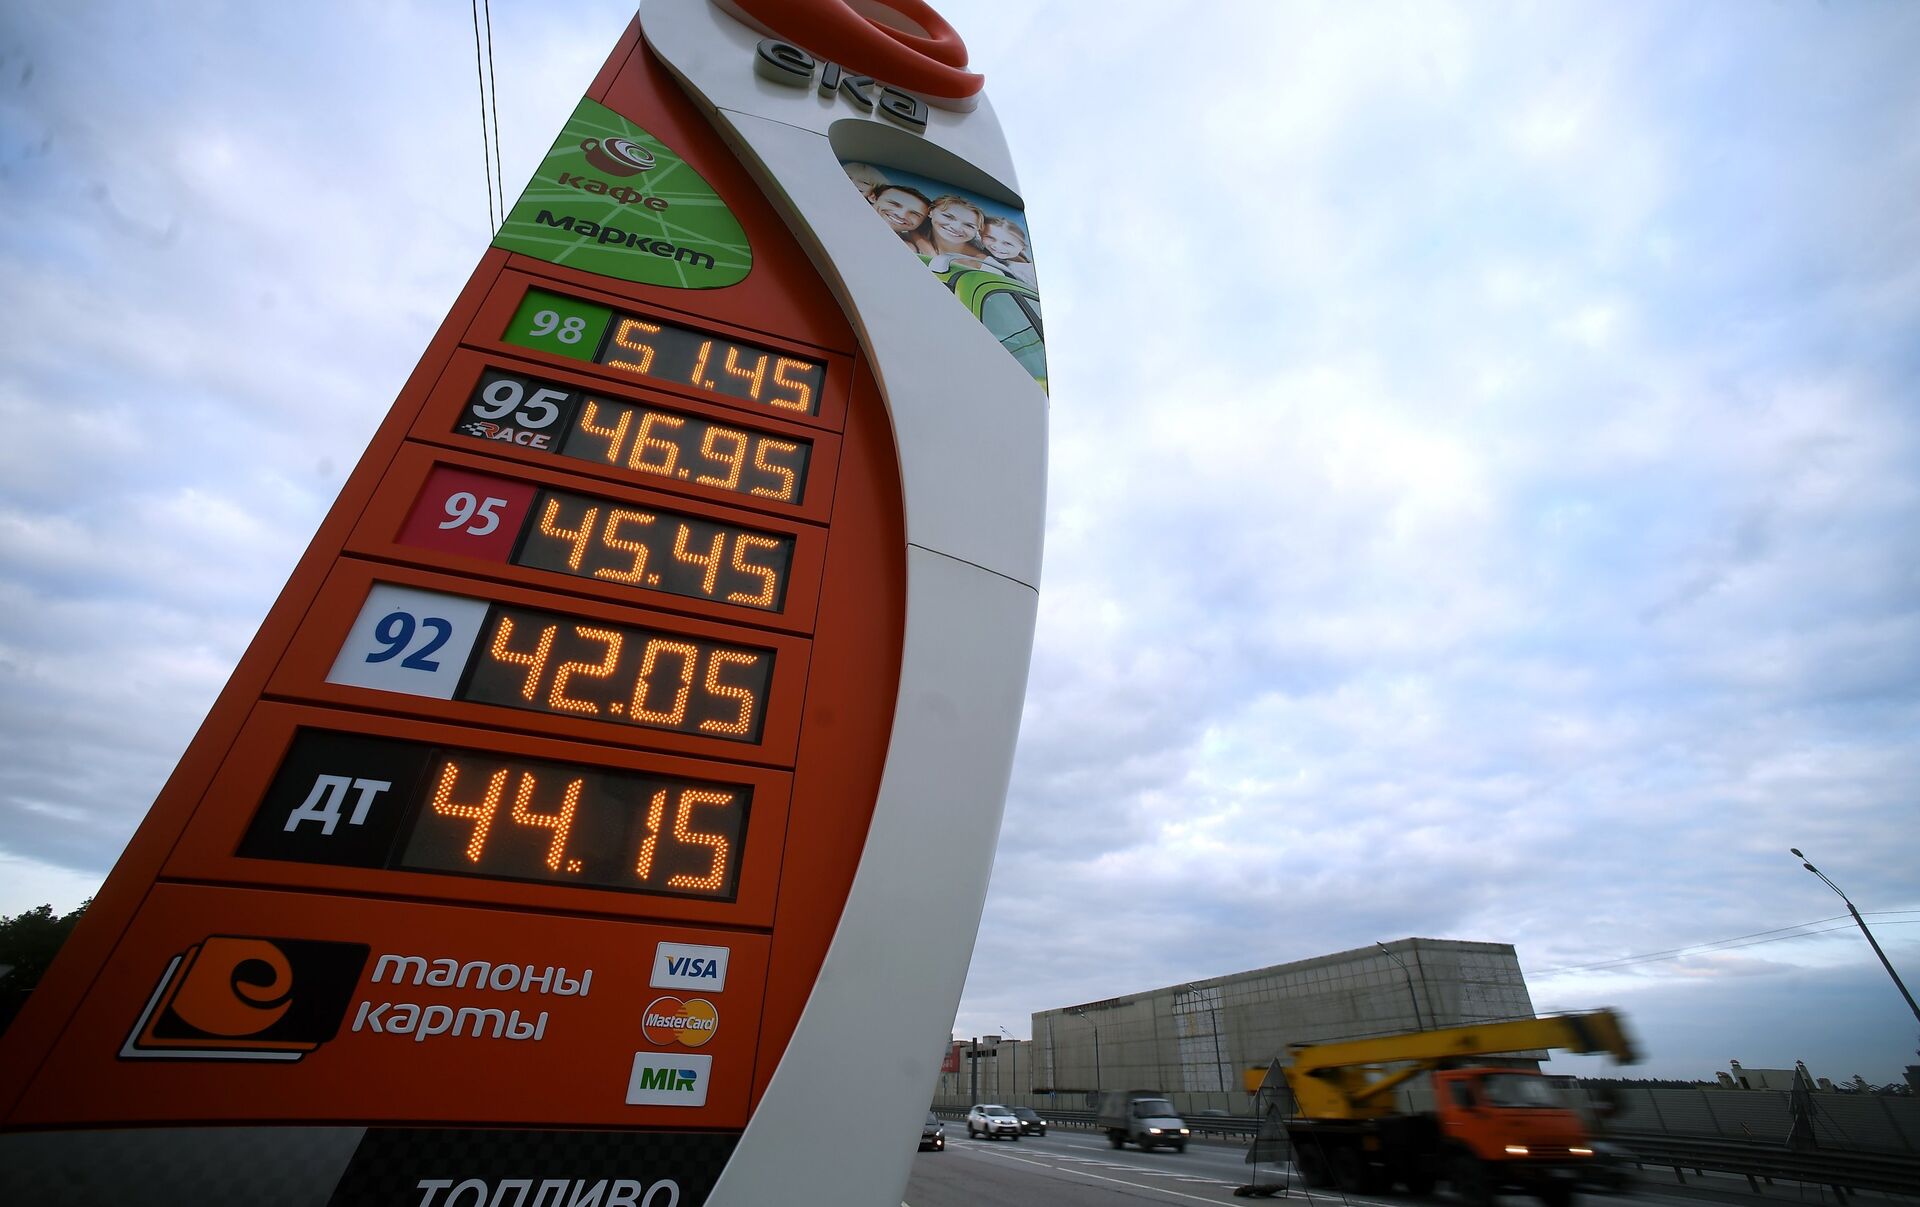 Бензин по английски. Цены на бензин. Ценник на бензин. Дешевый бензин. Бензин фото.